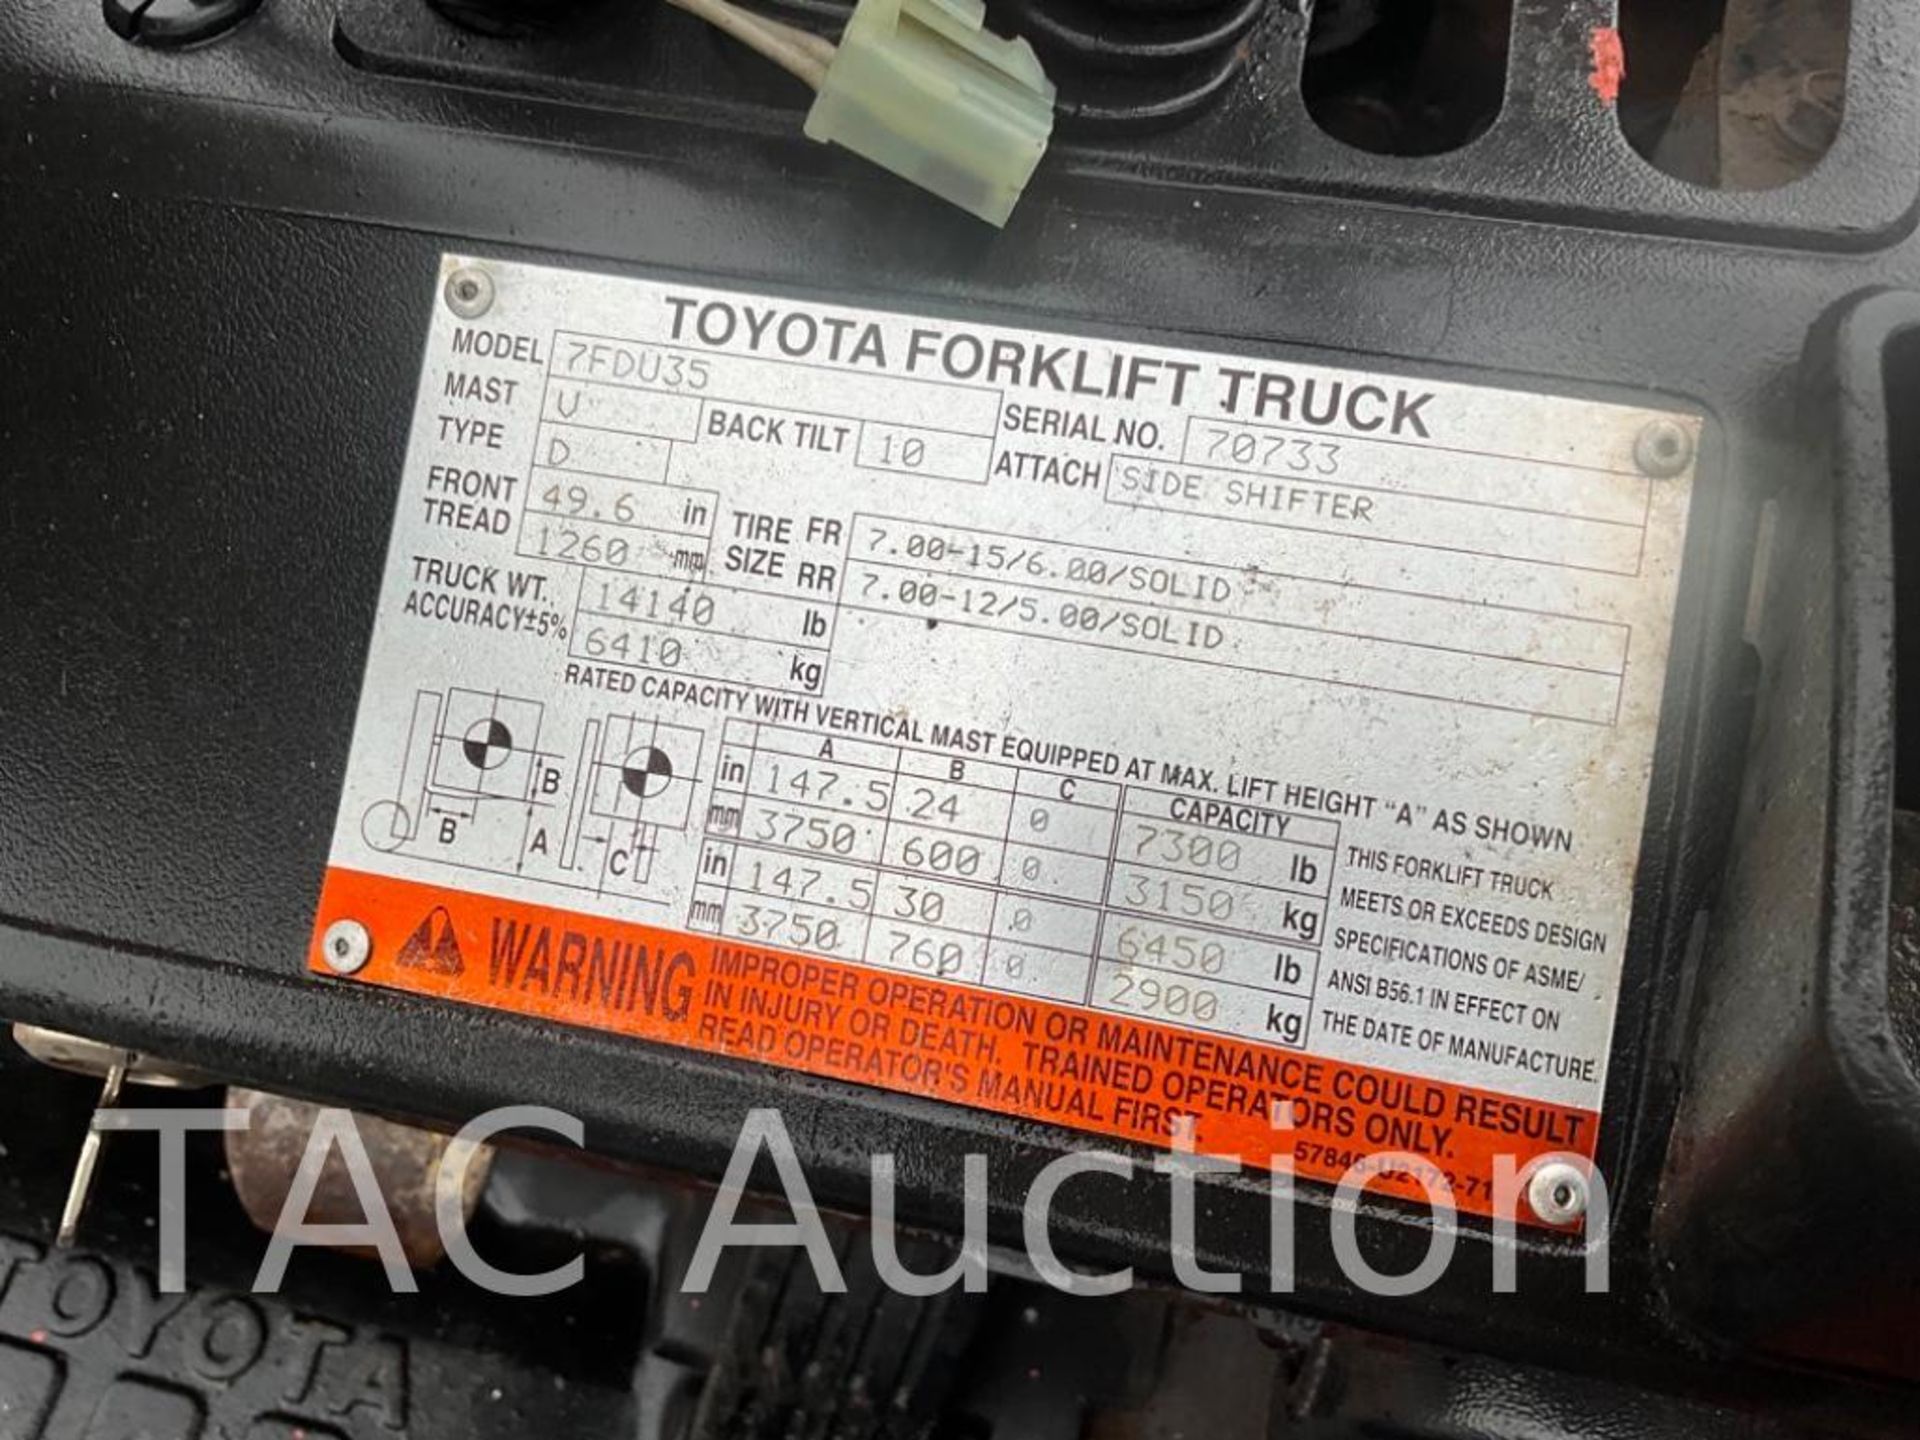 Toyota 7FDU35 8000lb Diesel Forklift - Image 31 of 31